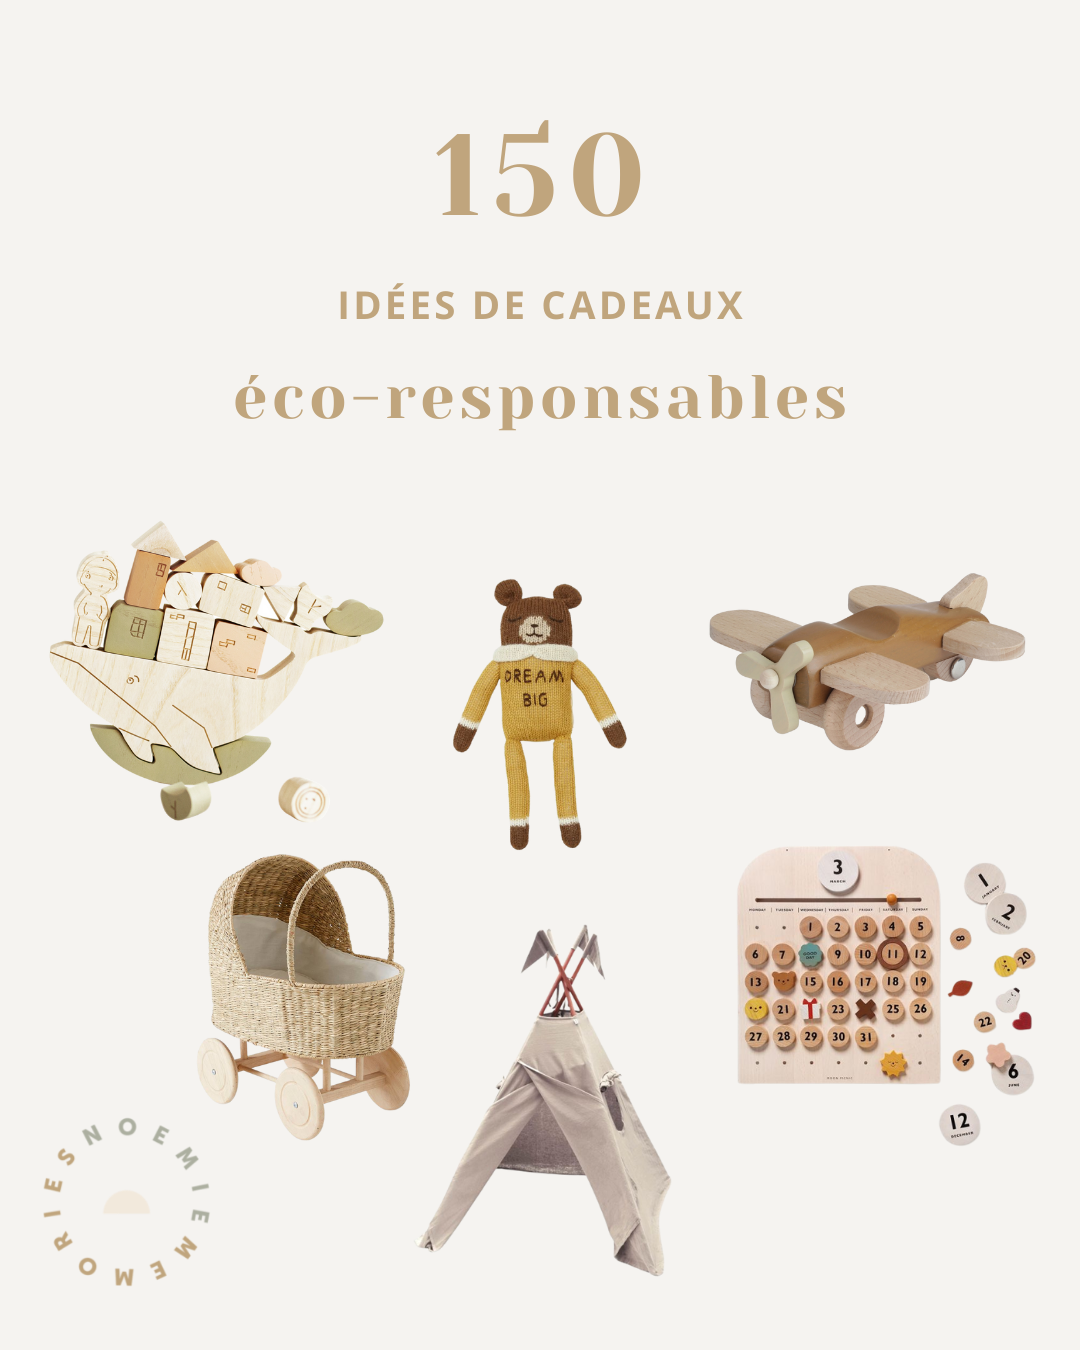 150 idées de cadeaux eco-friendly pour les enfants de 0 à 3 ans